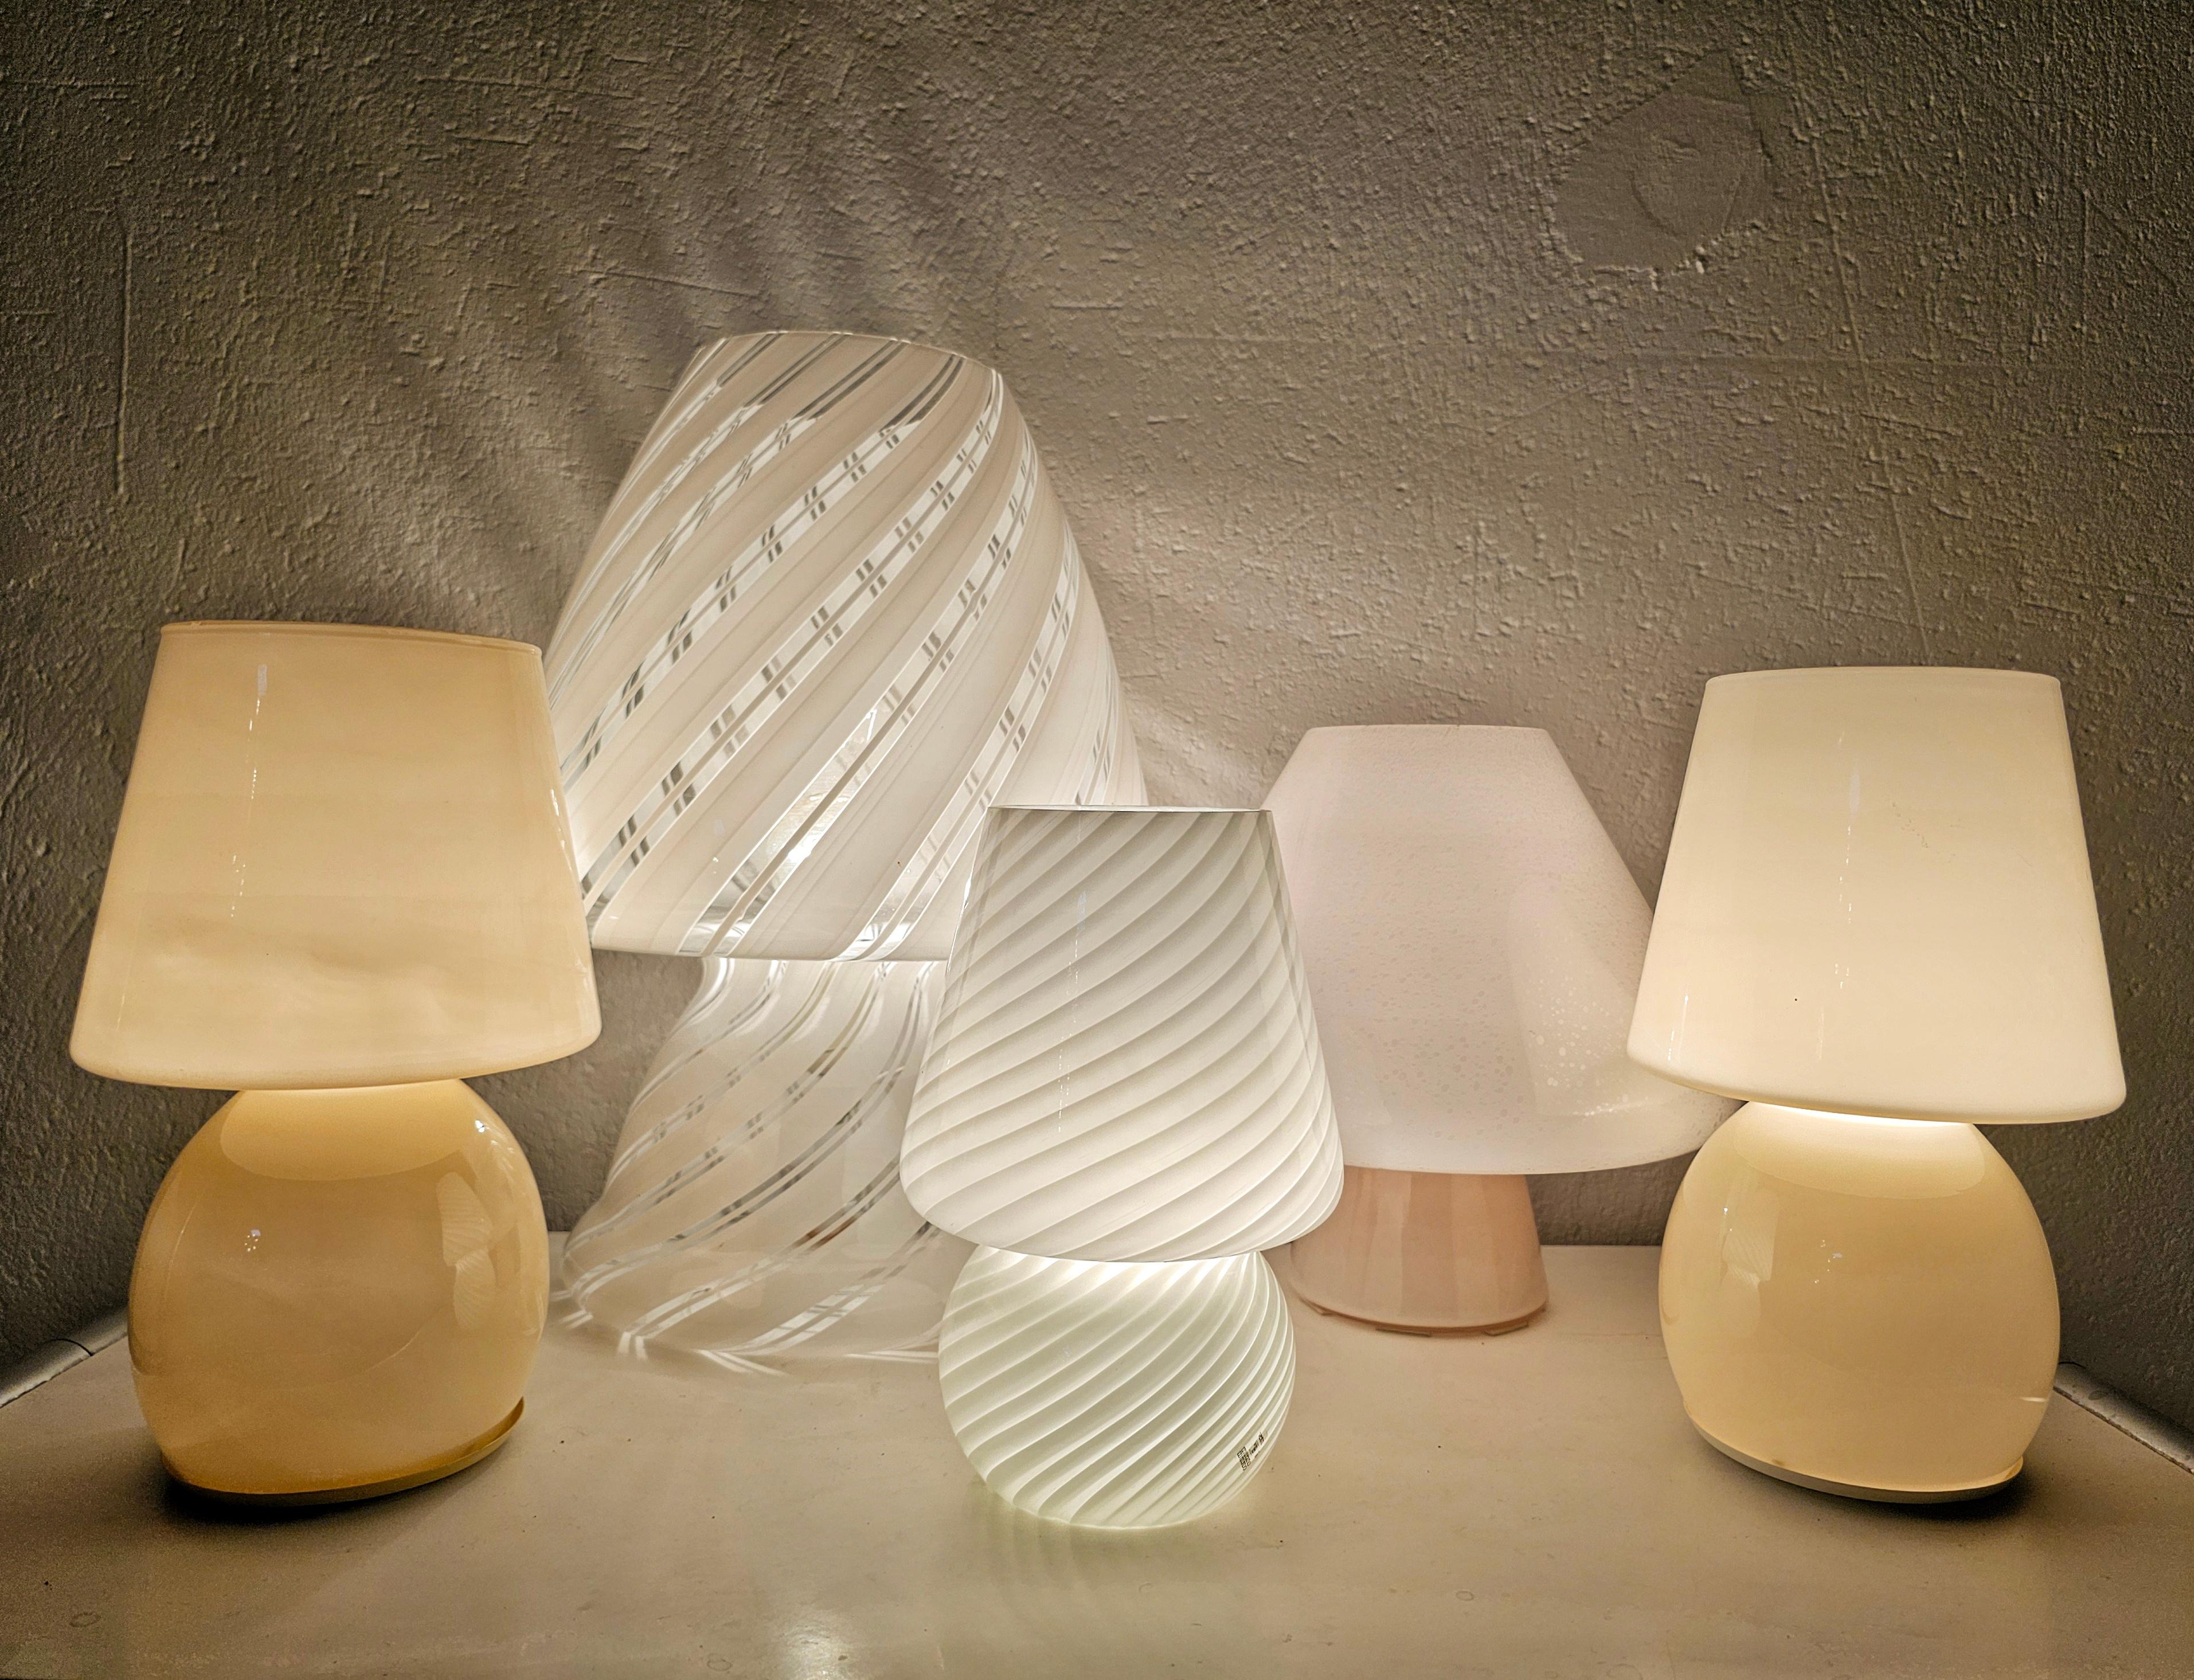 Ensemble de 5 lampes en forme de champignon en verre de Murano. Ils existent en différentes tailles et couleurs, dont deux seulement sont identiques, celles de couleur crème. La plus grande lampe a été conçue par Gino Vistosi, tandis que la plus